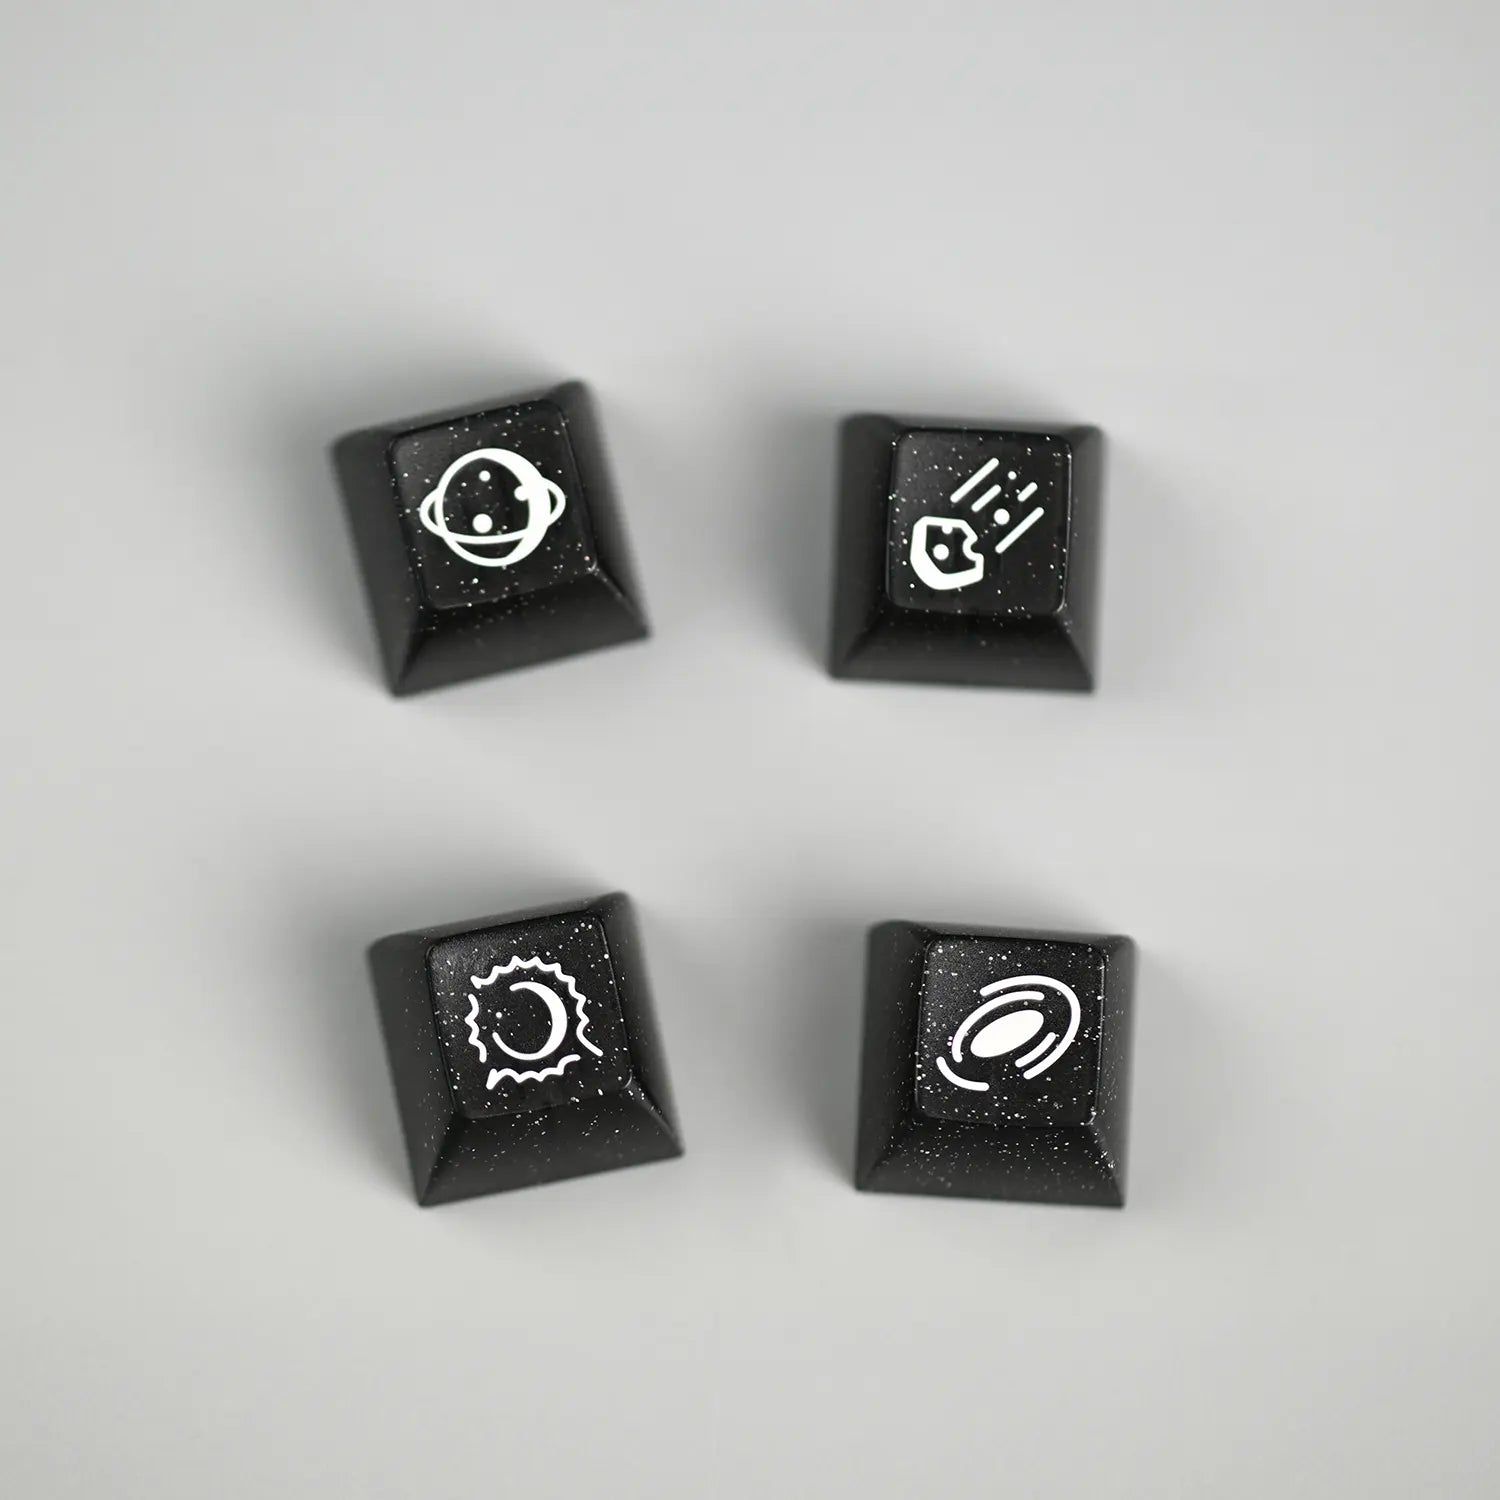 Collector Doubleshot KAT Novelty Keycaps Nebula 2 shot